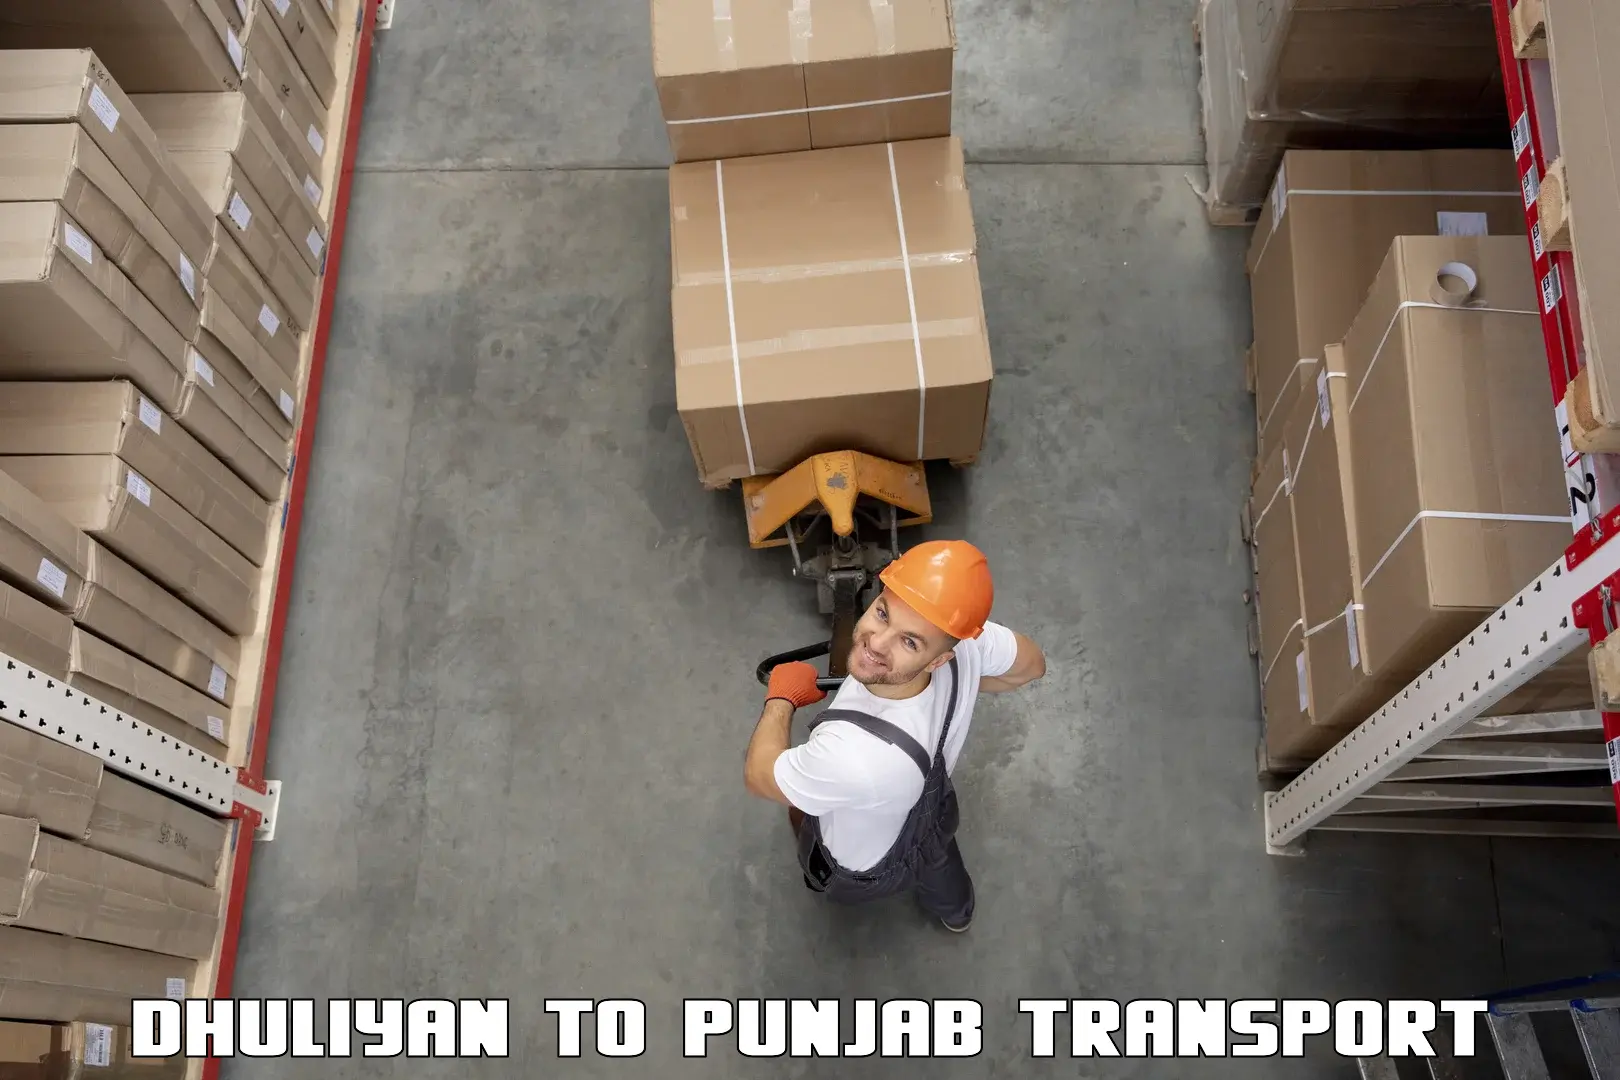 Transportation services Dhuliyan to Punjab